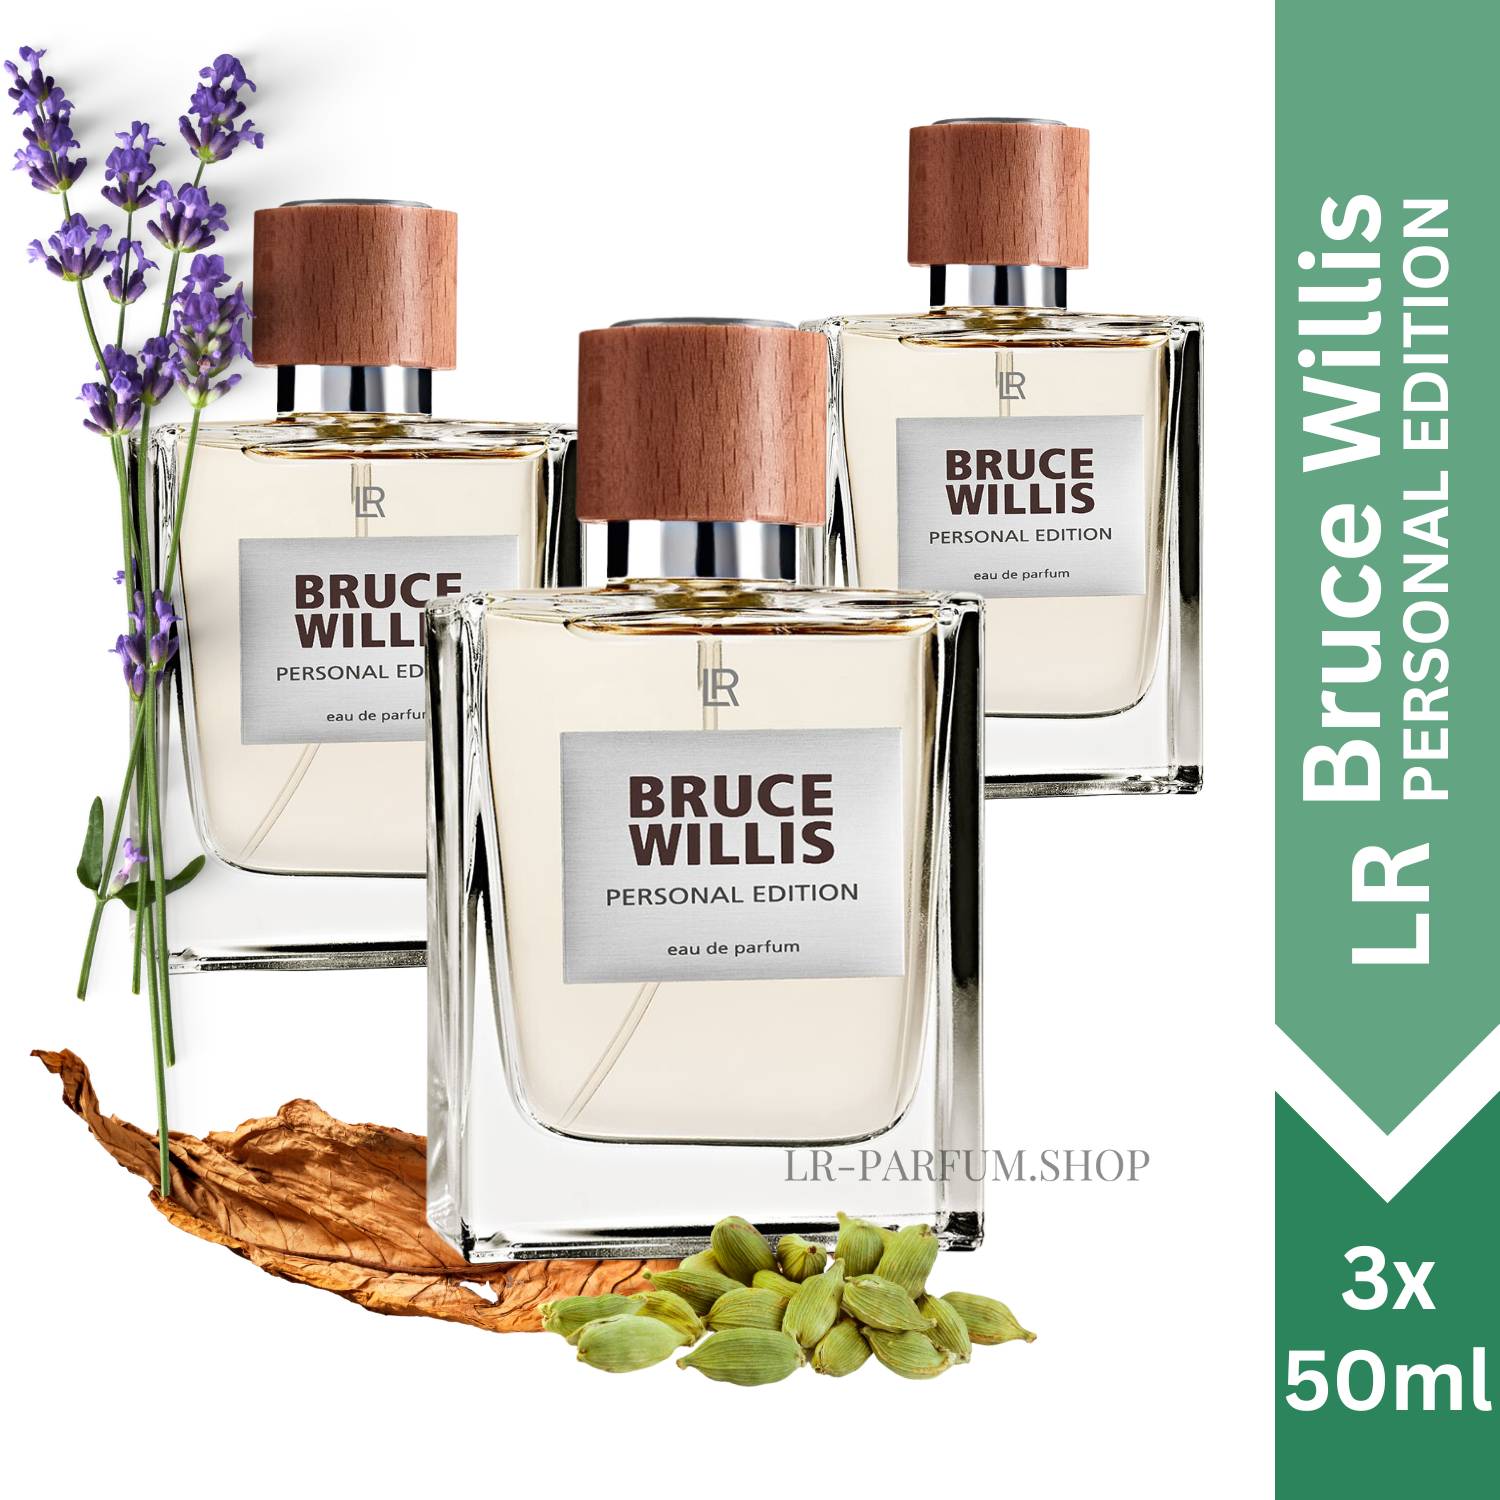 LR Bruce Willis Personal Edition - Eau de Parfum, 3er Pack (3x 50ml) - LR-Parfum.shop